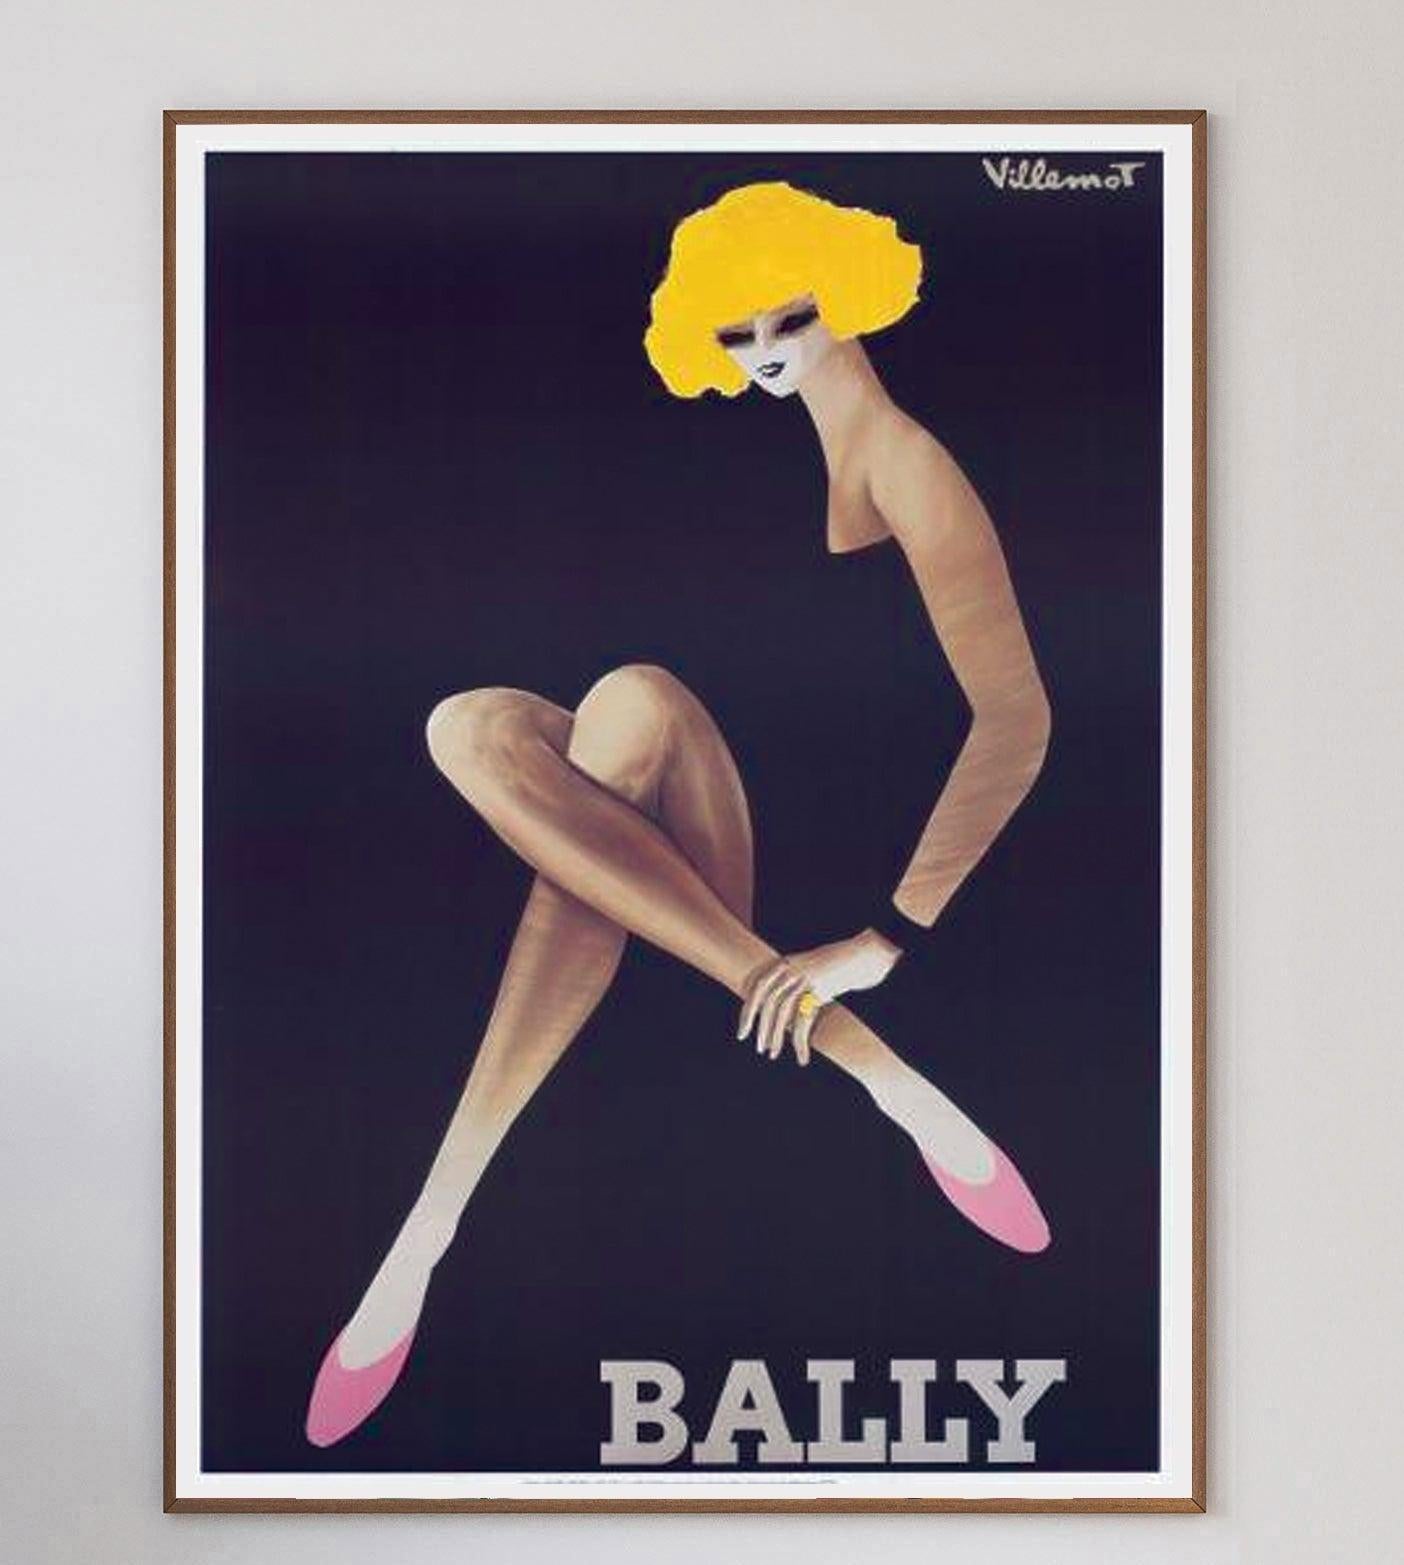 Les collaborations entre Bernard Villemot et Bally, l'un des designs les plus emblématiques et les plus recherchés du 20e siècle, illustrent le croisement entre la publicité et les beaux-arts.

Le chausseur suisse de luxe a travaillé avec le célèbre